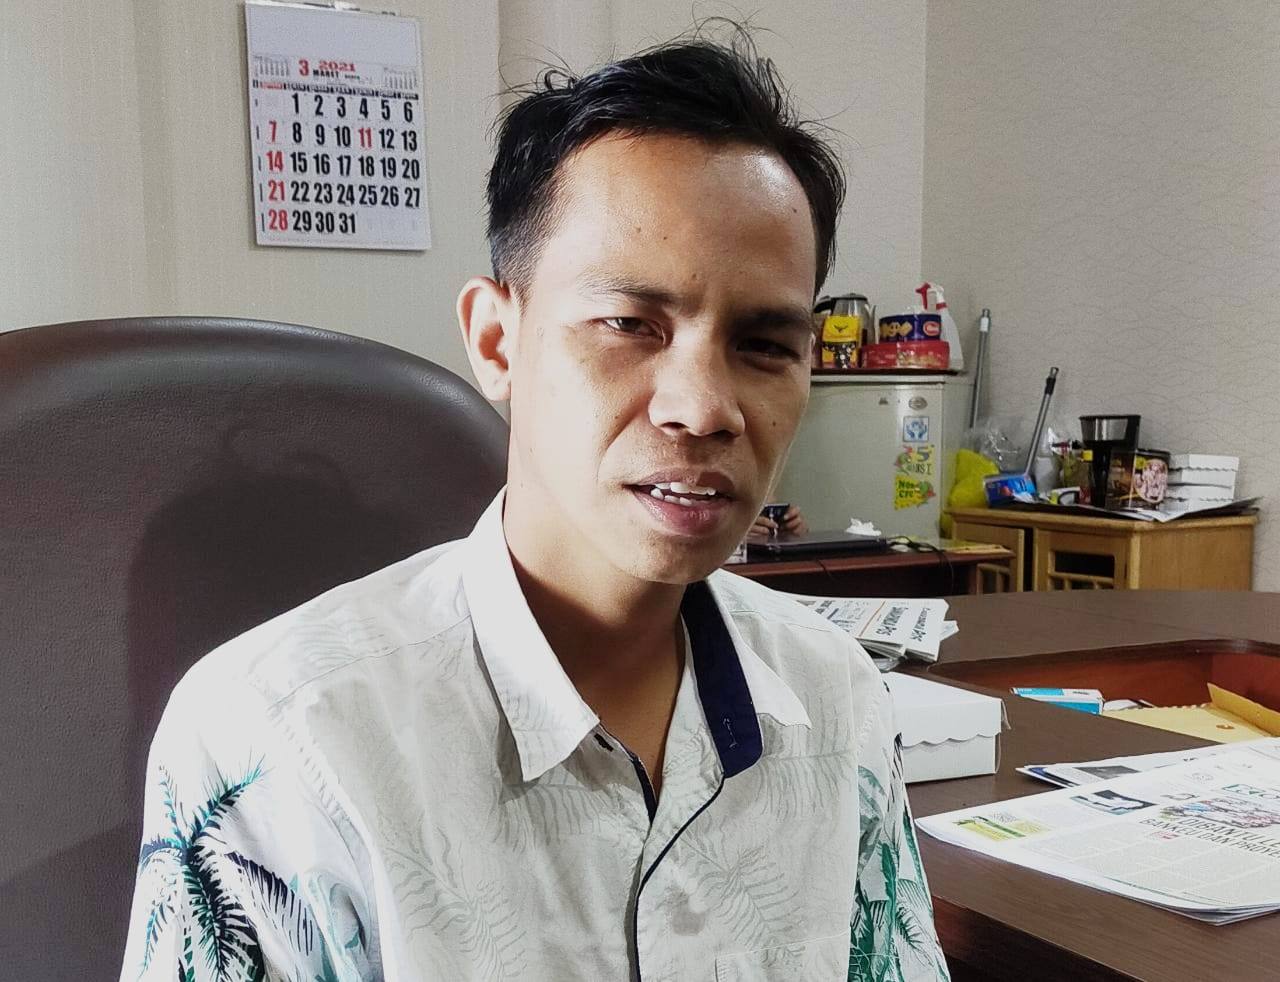 DPRD Samarinda Dukung Pemulihan Ekonomi Lewat Revisi Perwali No 43/2020